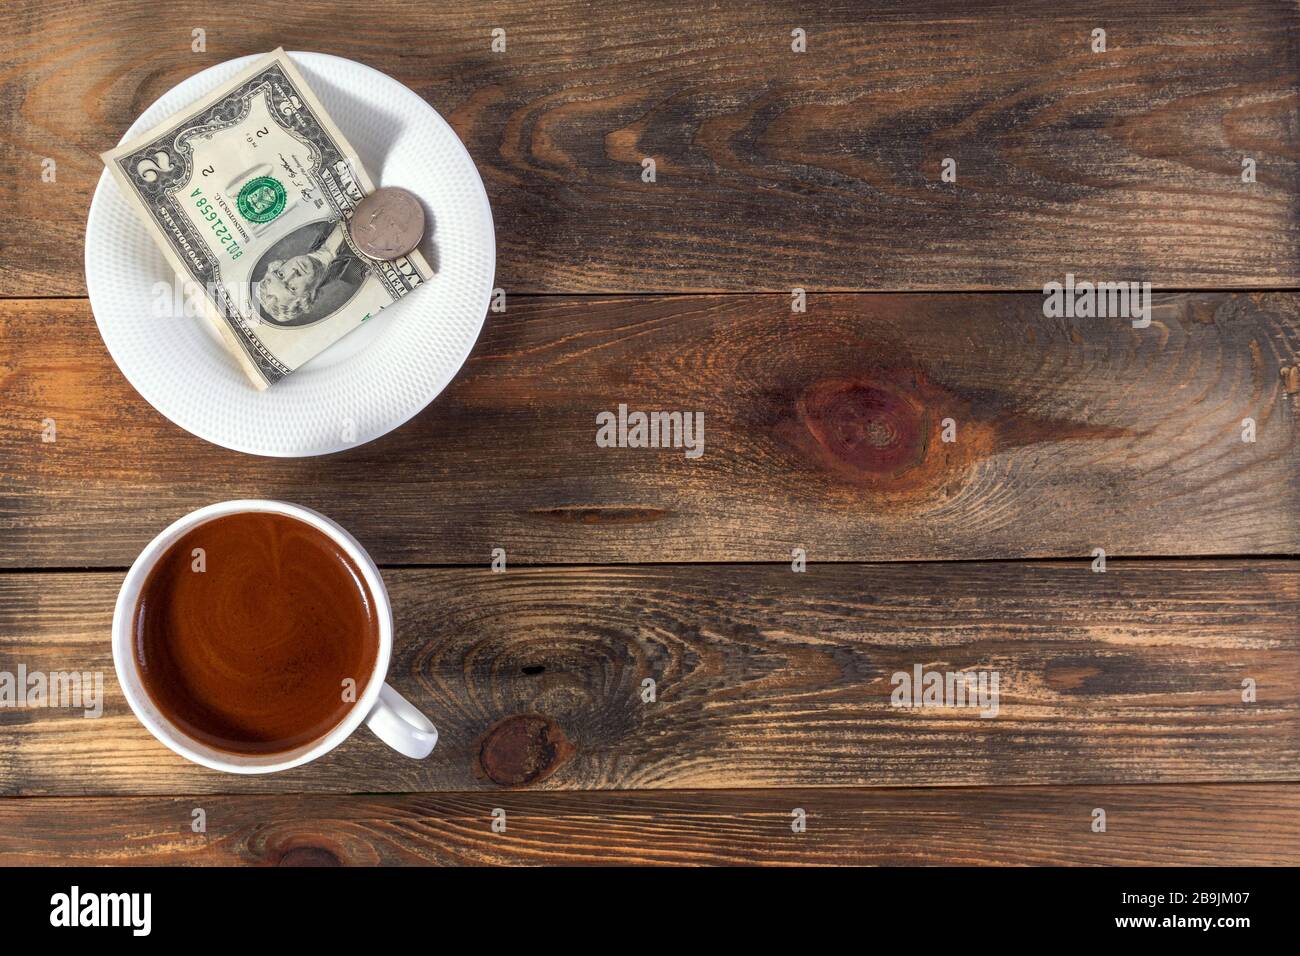 Tasse blanche avec café et soucoupe espresso revigorants avec deux billets et pièces de monnaie américains. Sur fond en bois sombre. Paiement ou conseil. Vue de dessus. CO Banque D'Images